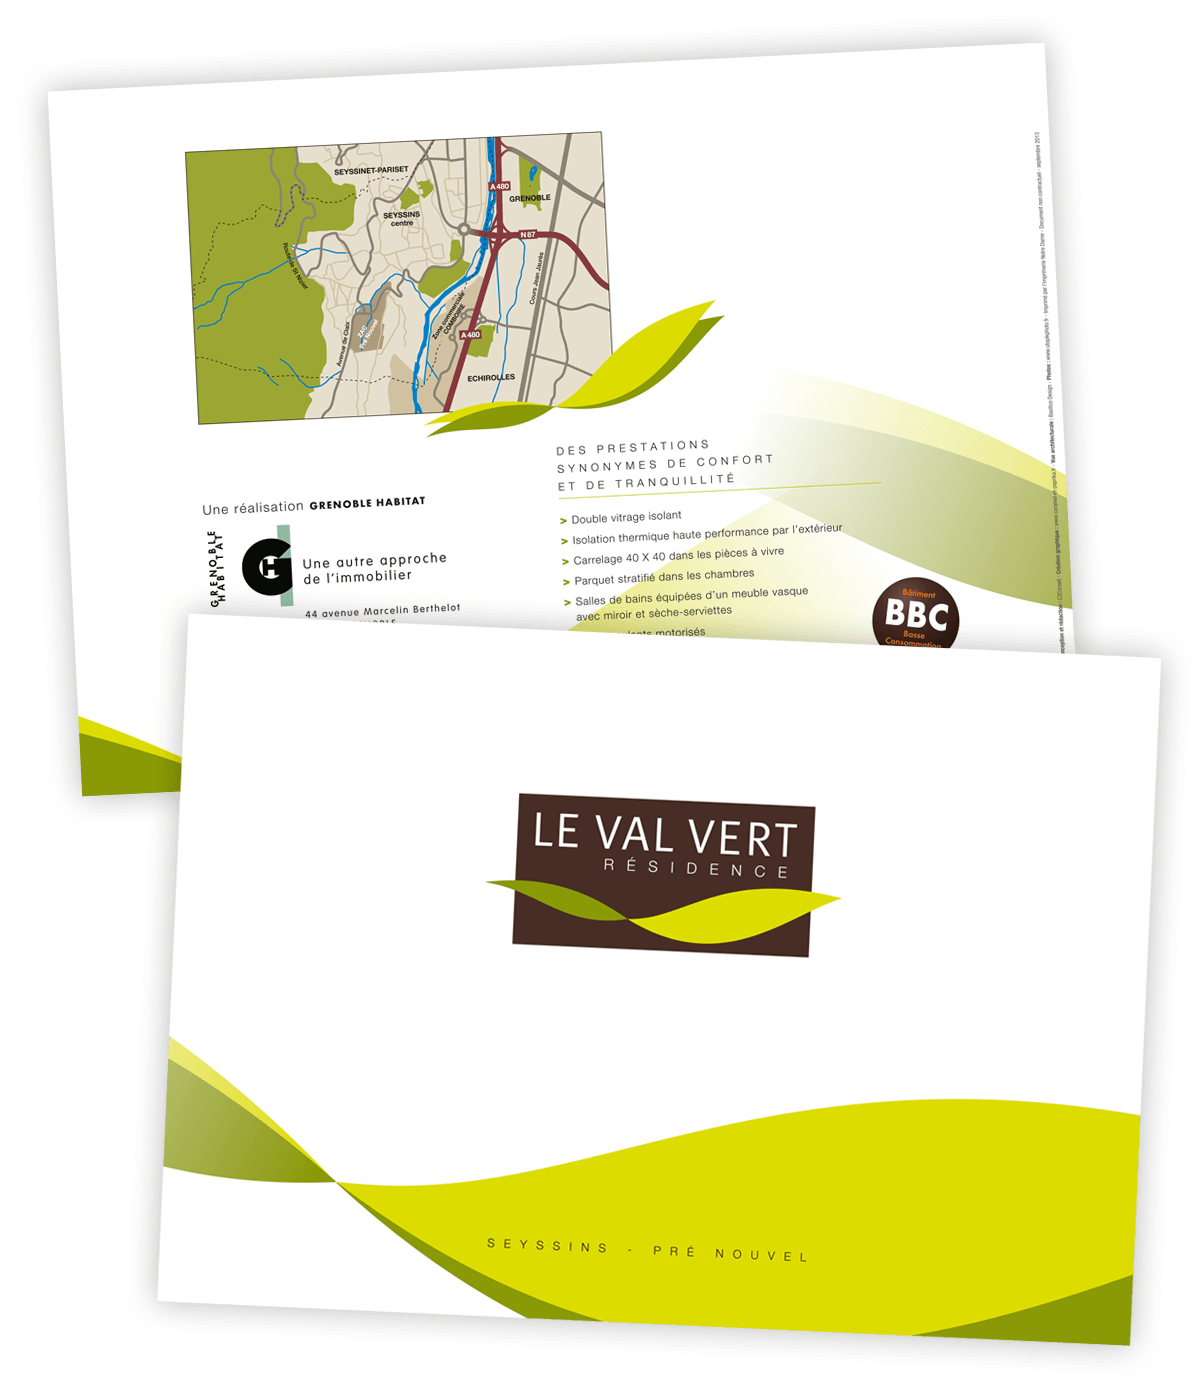 Identité visuelle du Val vert, programme immobilier neuf, créée pour Grenoble Habitat par Caramel & Paprika - Première et dernière pages de couverture de la plaquette commerciale